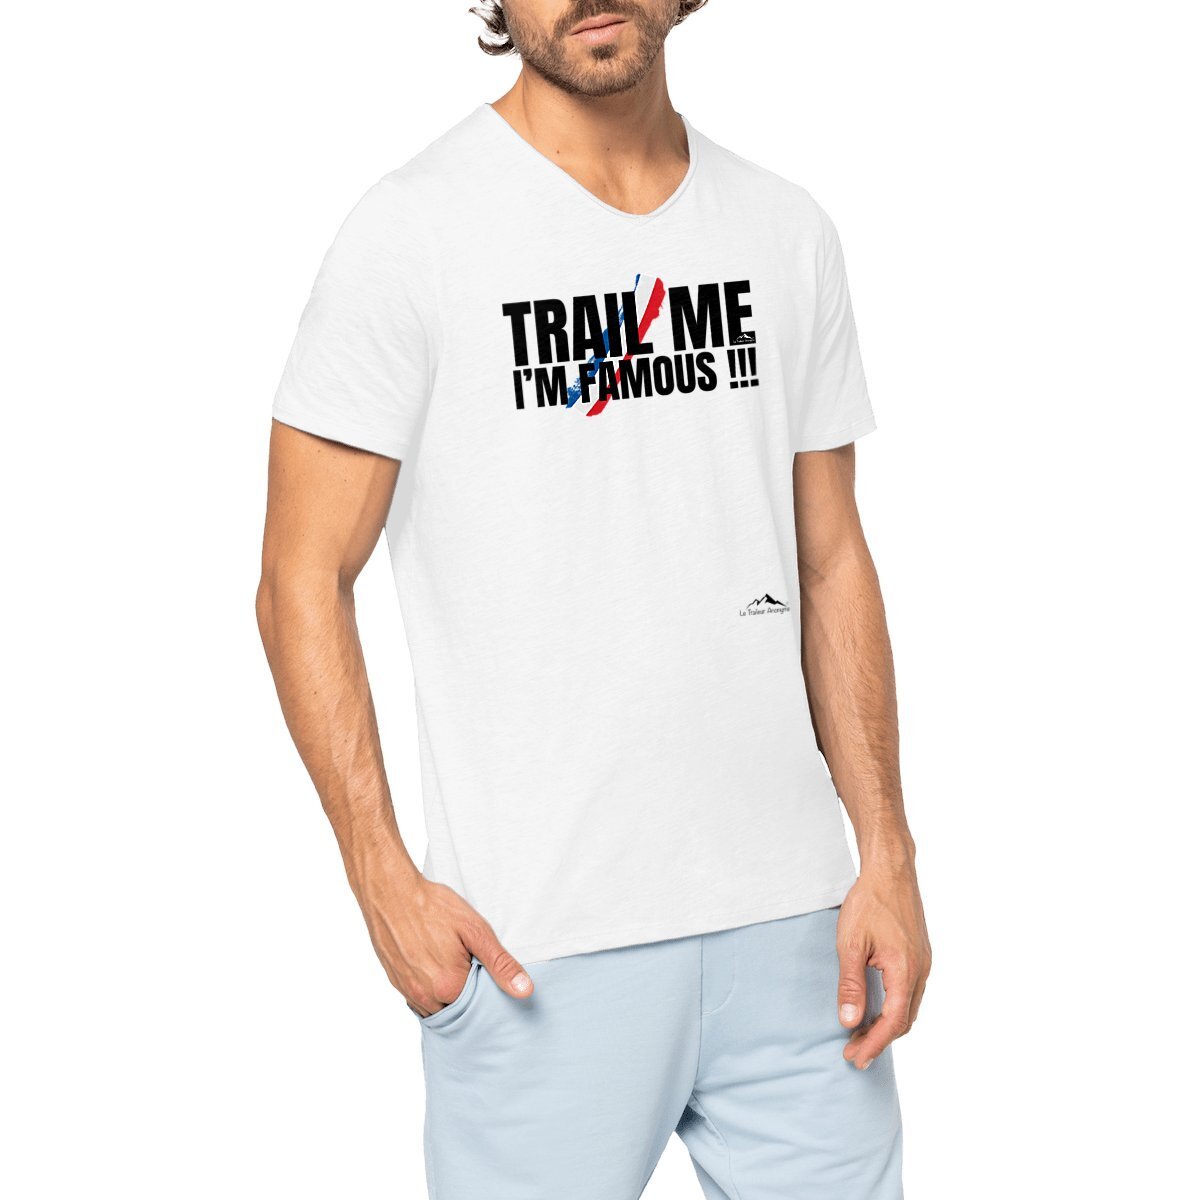 T-shirt Coton Bio Slub Premium - Homme - Collection "Trail Me, I'm Famous !!!" (1710) - Le Traileur Anonyme